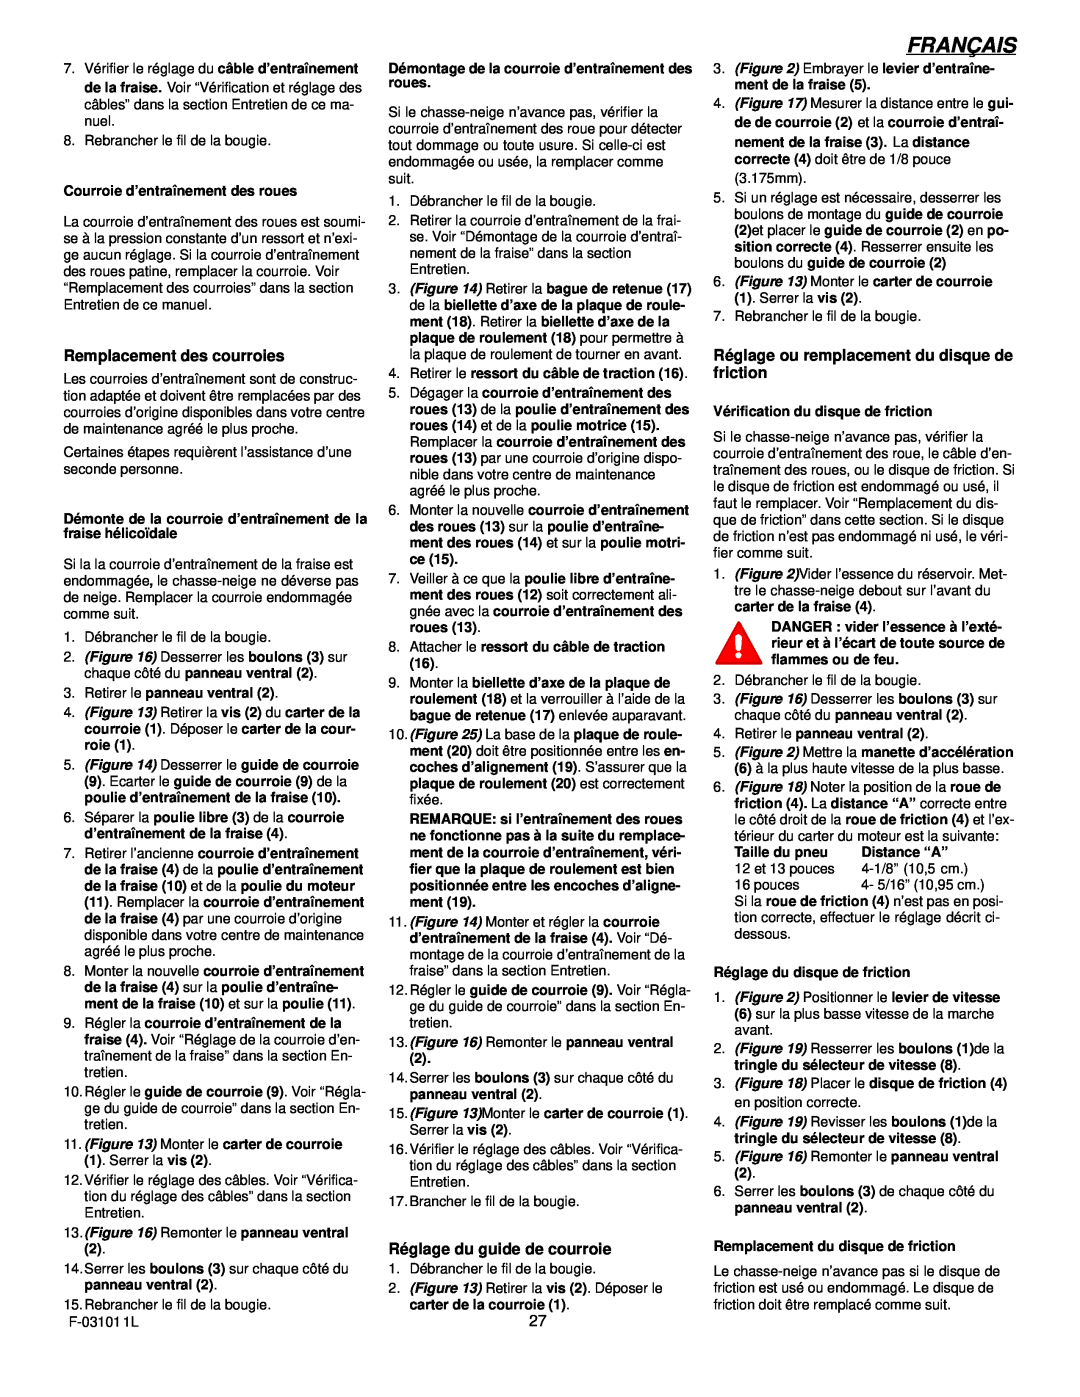 Murray 624504x4C manual Français, Remplacement des courroies, Réglage du guide de courroie 